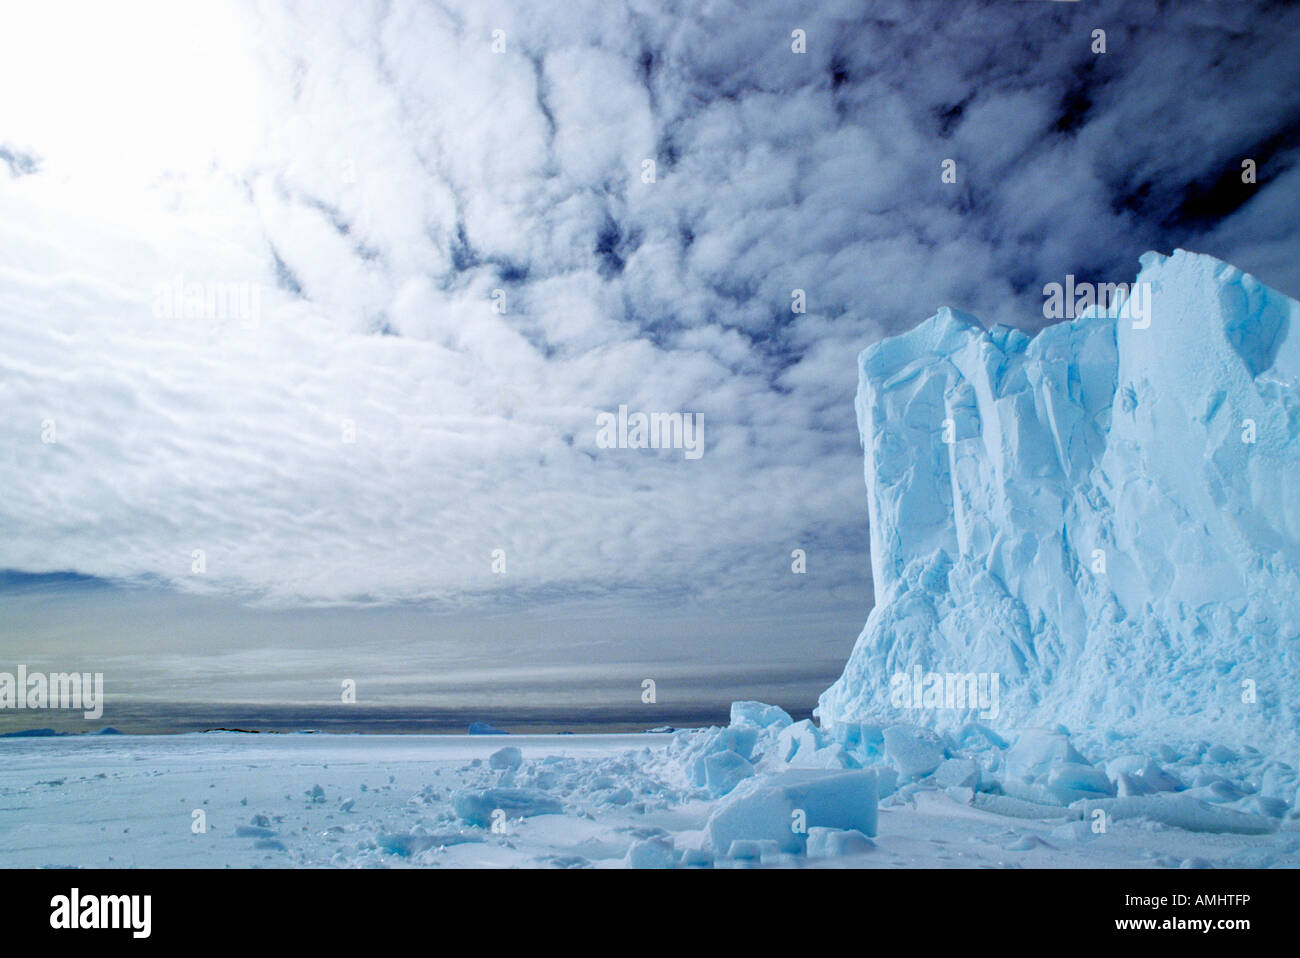 Antarctique Antarctique Iceberg iceberg format horizontal de la géographie des paysages de glace de l'eau de mer de l'Antarctique Banque D'Images